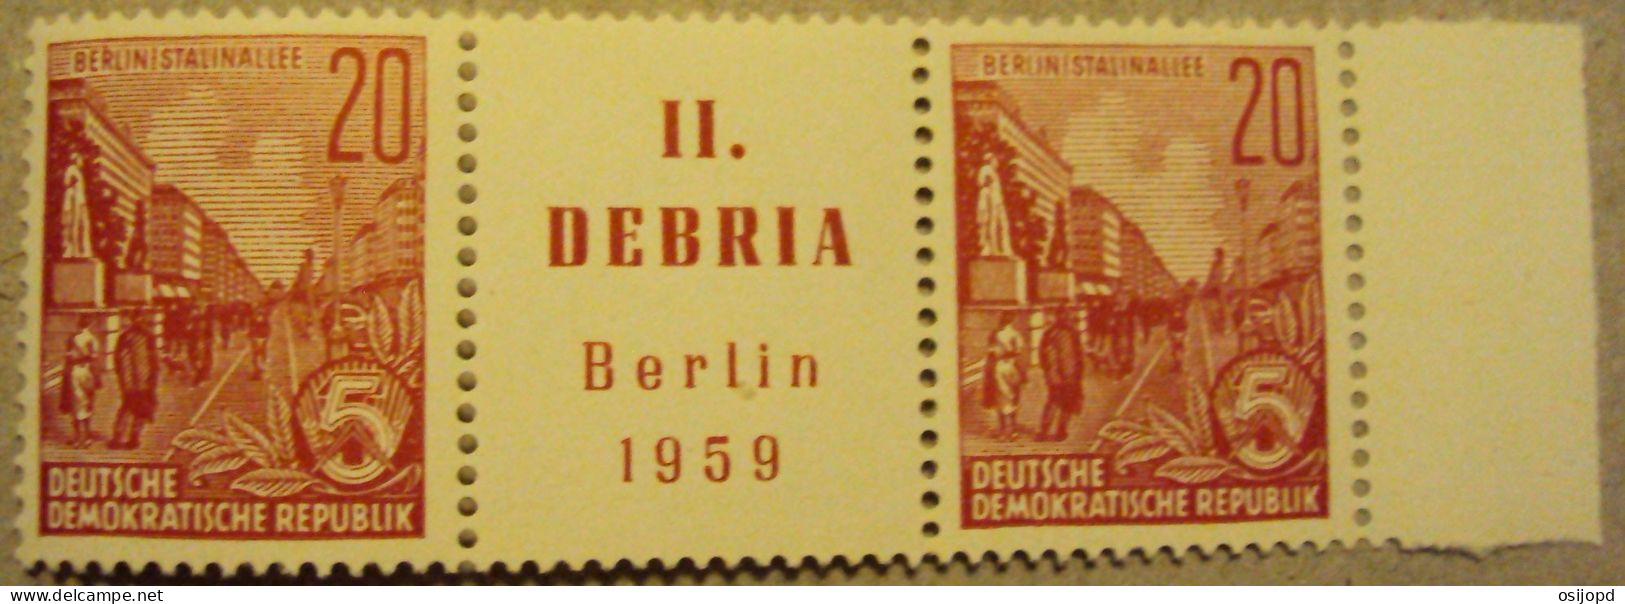 DDR, 1959, DEBRIA II, Vignete, Postfrisch - Neufs